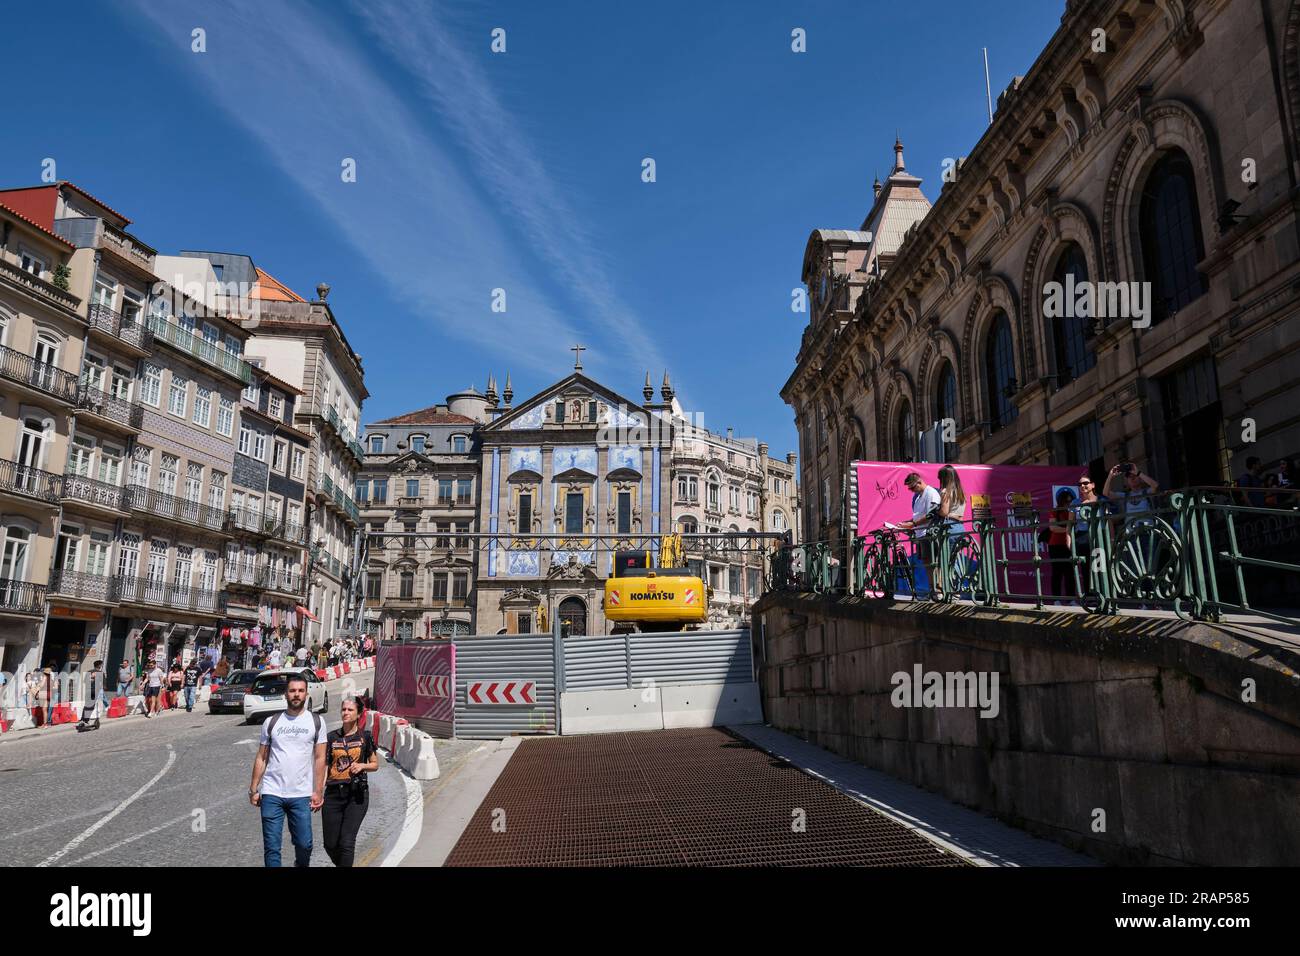 Porto architecture, Portugal Stock Photo